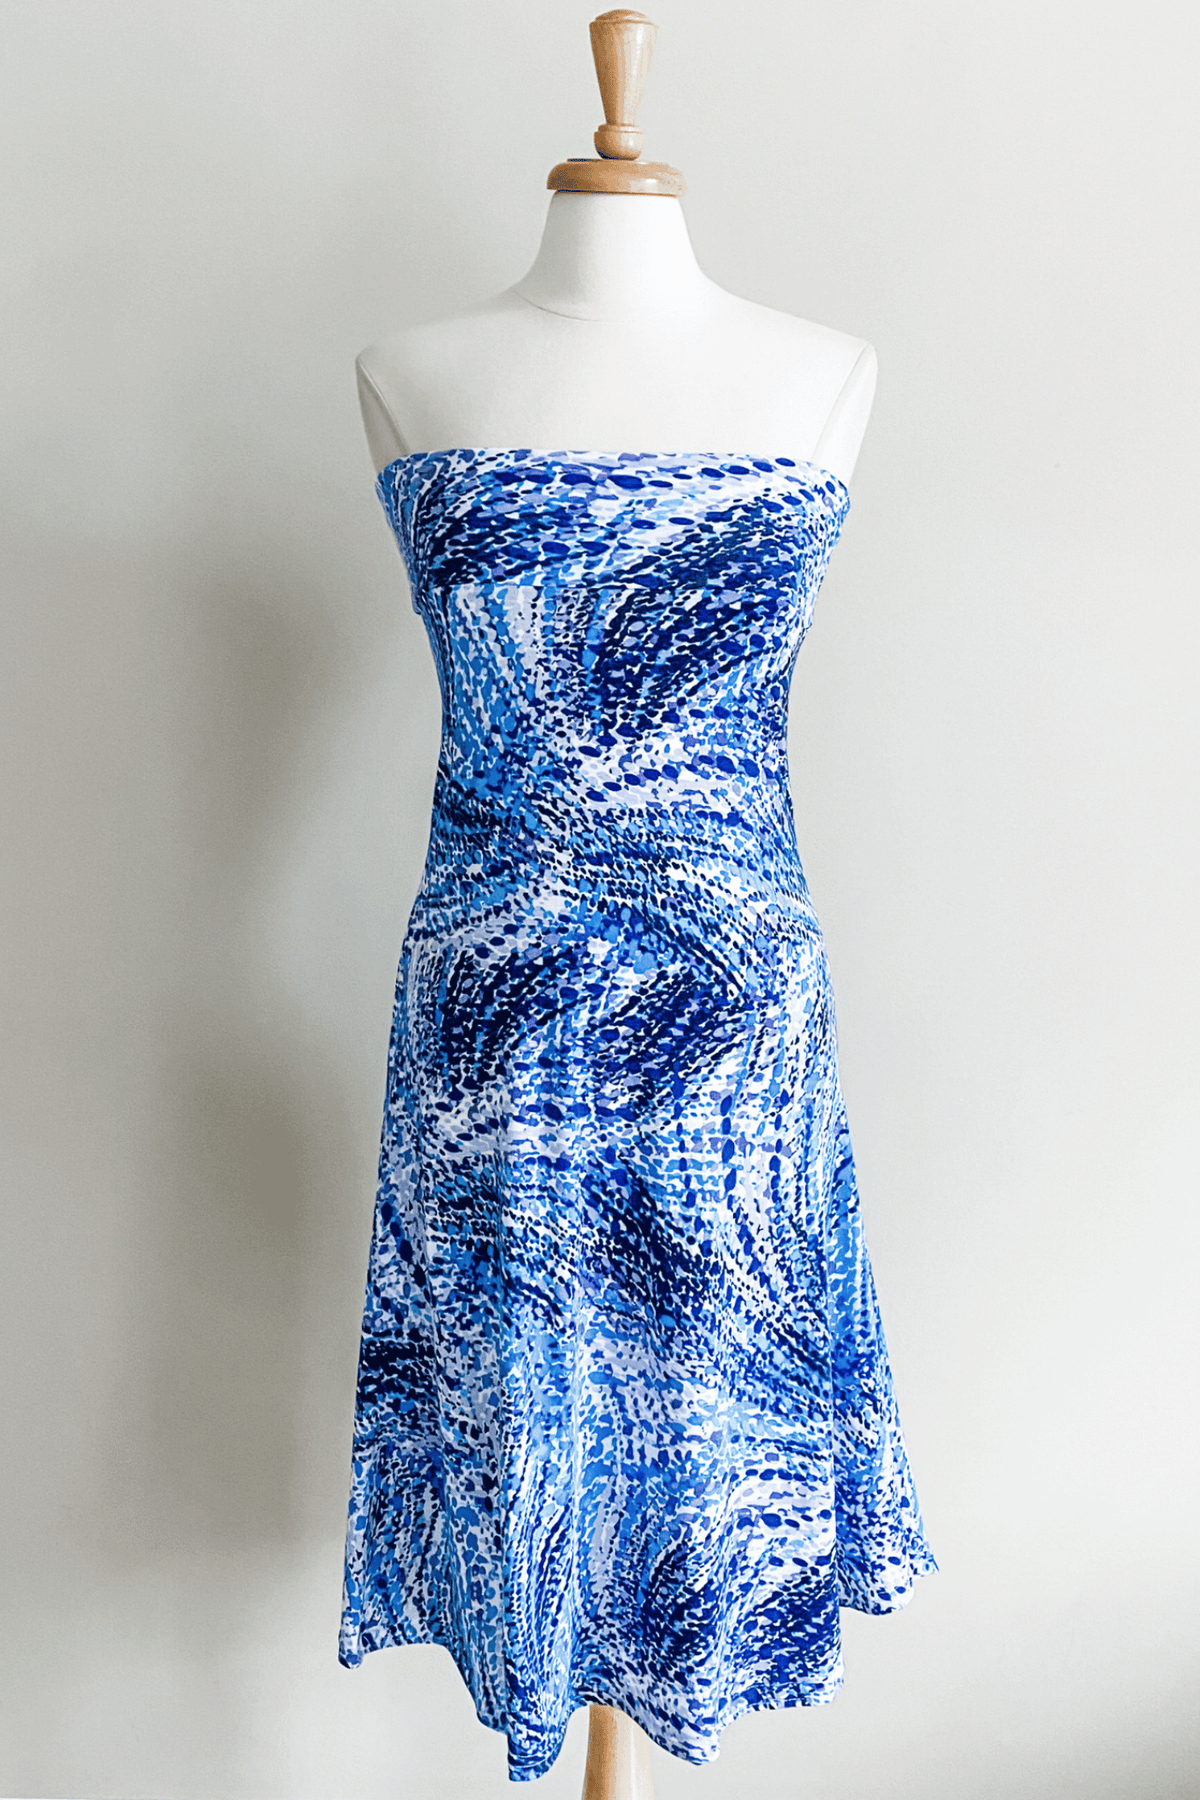 Diane Kroe Wear-Ever Dress in Prints (Whirlpool Purple Blue) - Warm Weather Capsule Collection